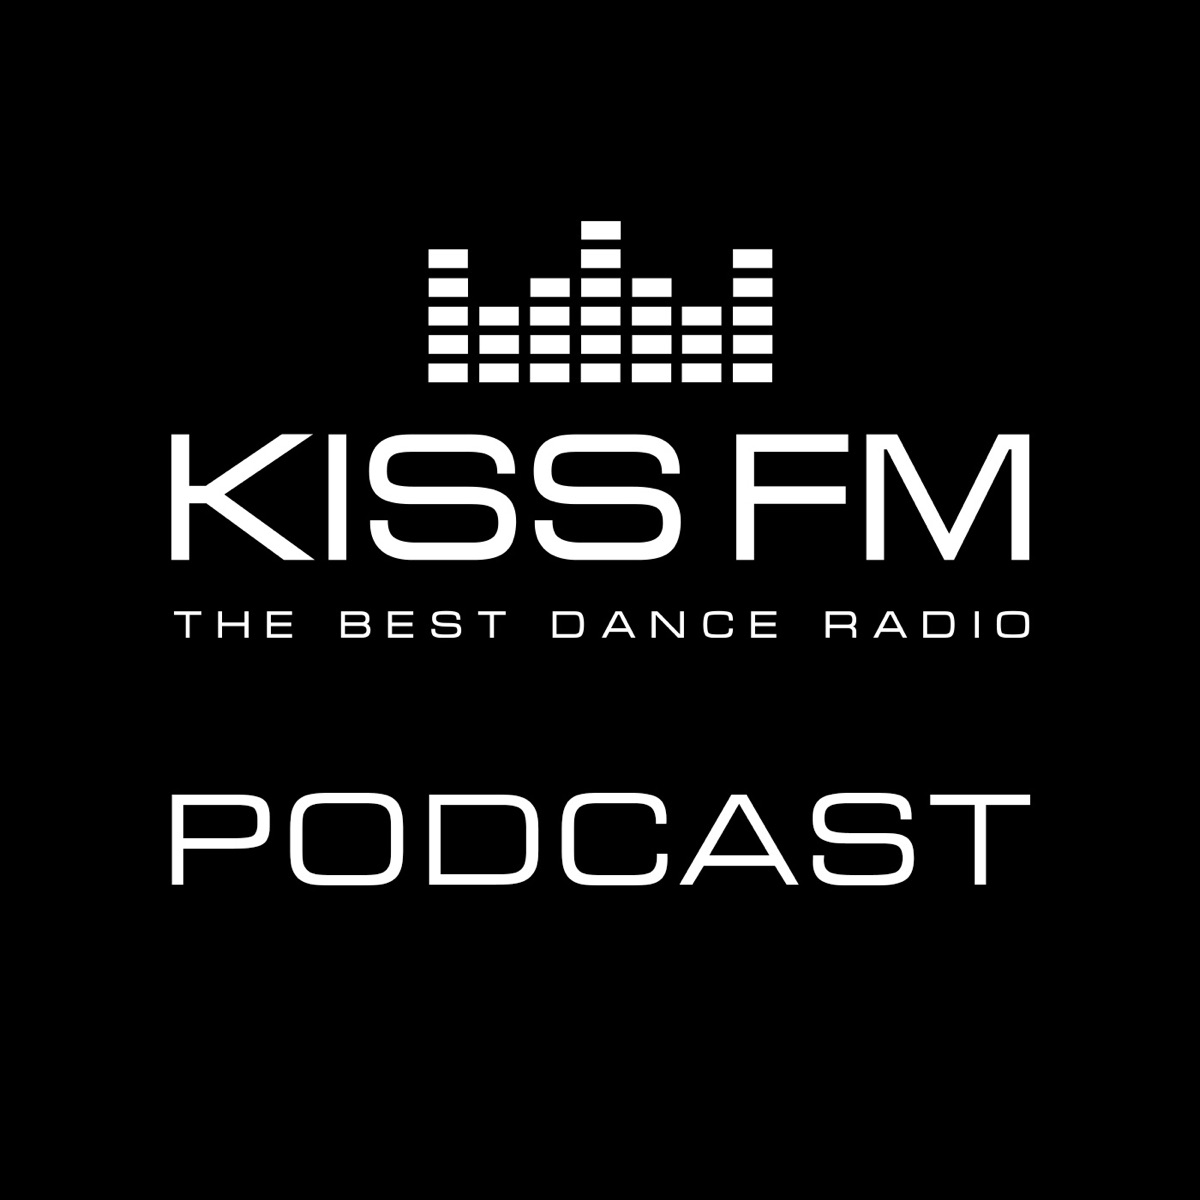 KISS FM Ukraine – Podcast – Podtail